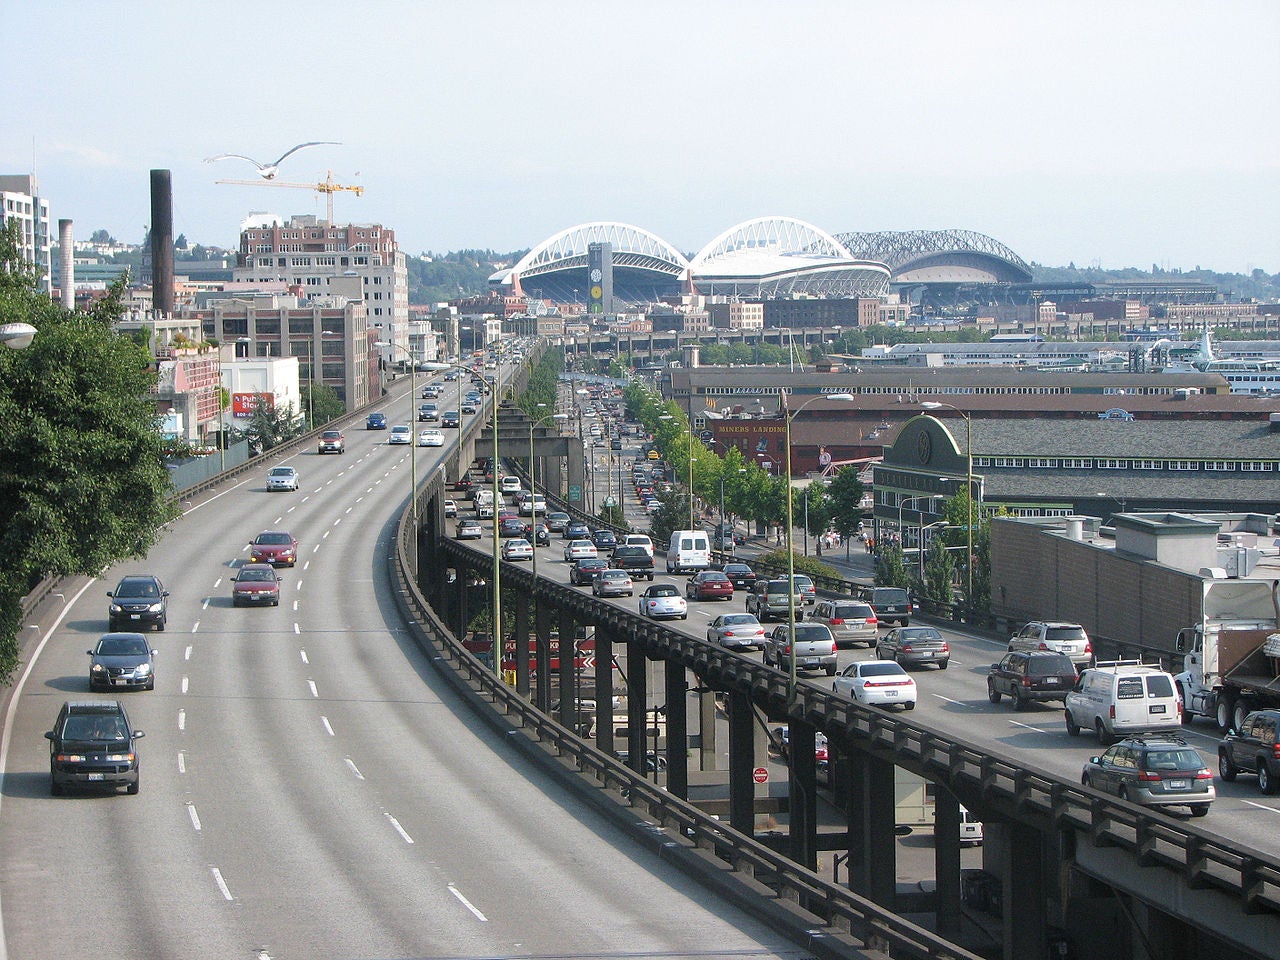 Alaskan Way Viaduct – Seattle, WA  (Image: Rootology/Wikimedia Commons)